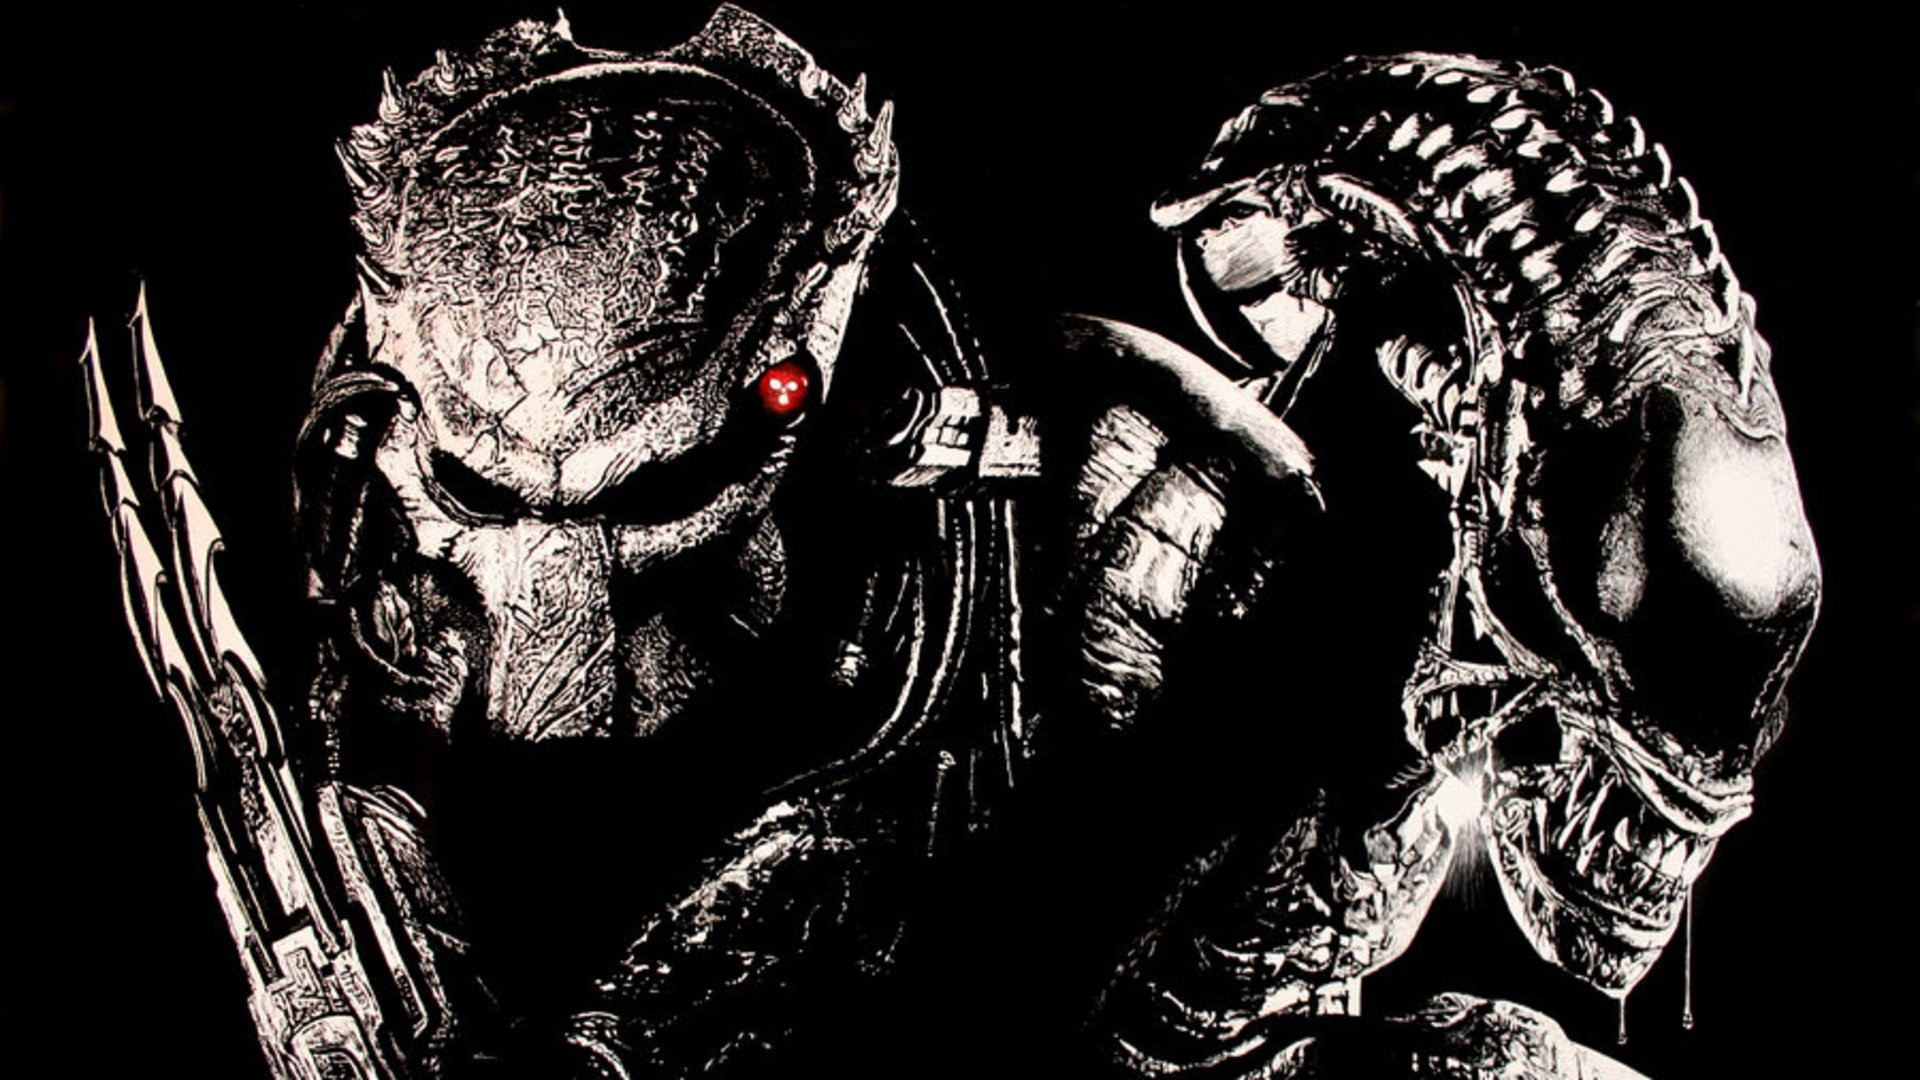 Aliens Vs. Predator Wallpapers - Wallpaper Cave